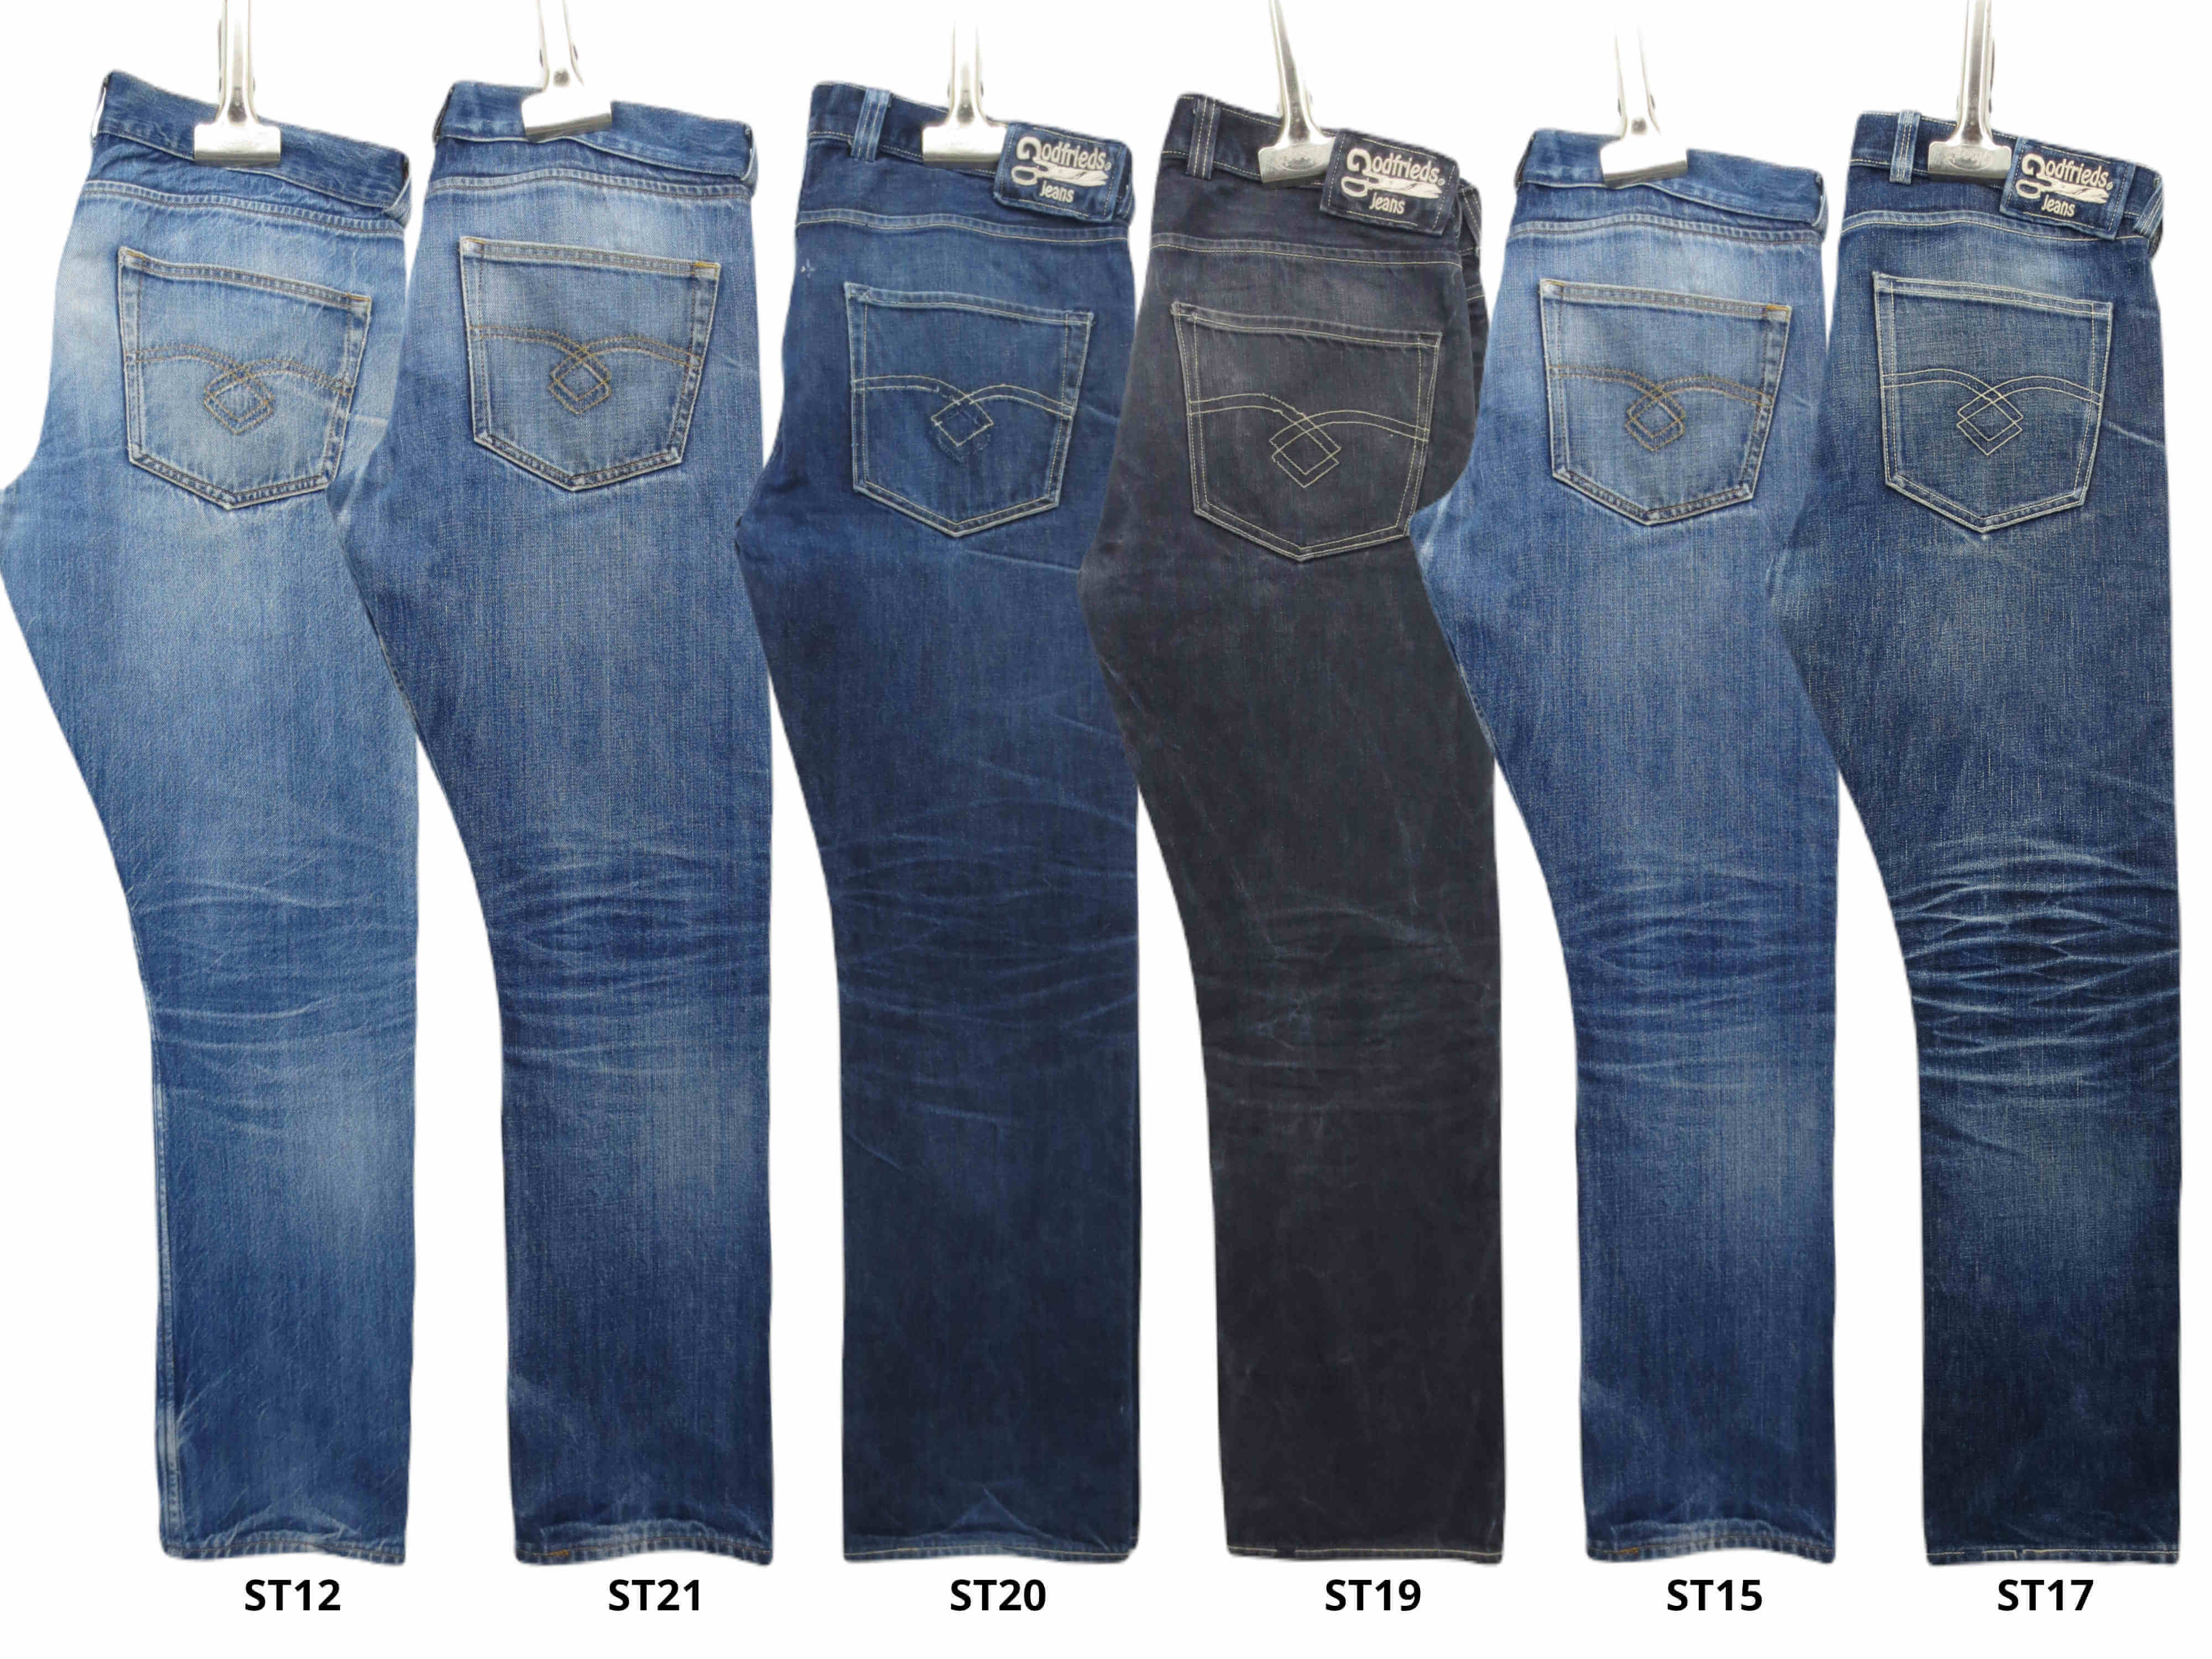 nos jeans après avoir été portés pendant 365 jours.